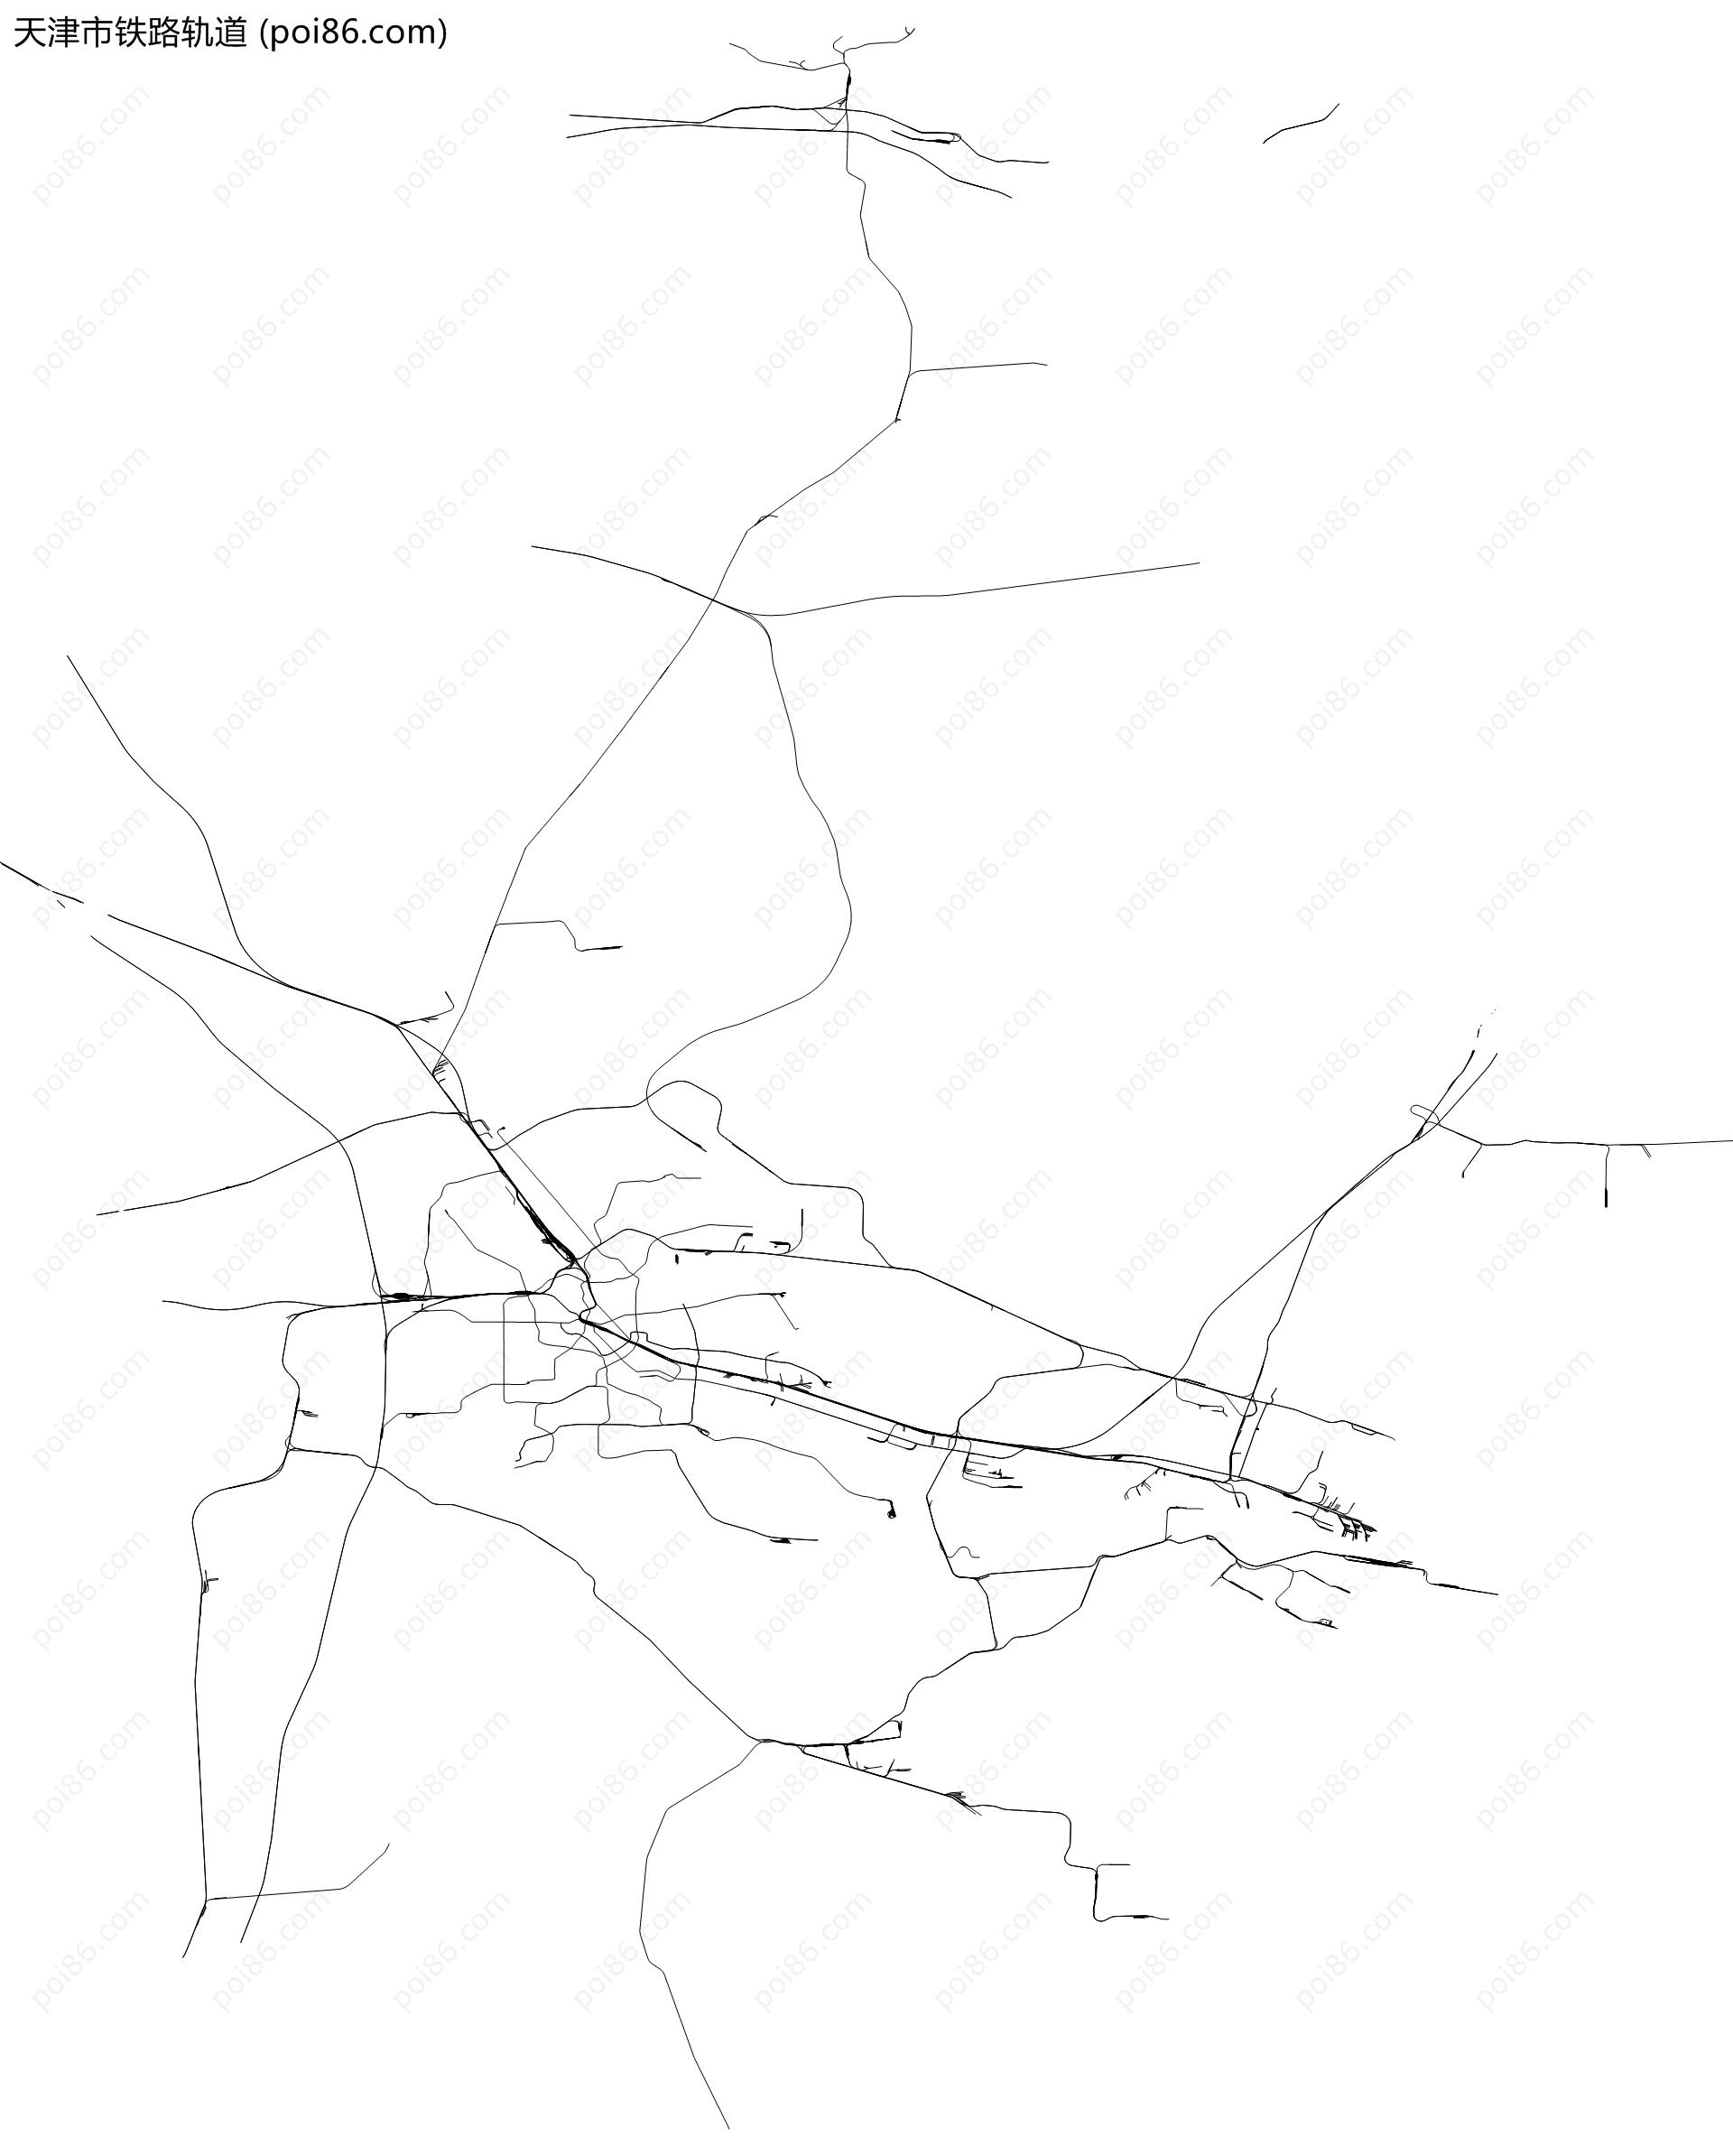 天津市铁路轨道地图